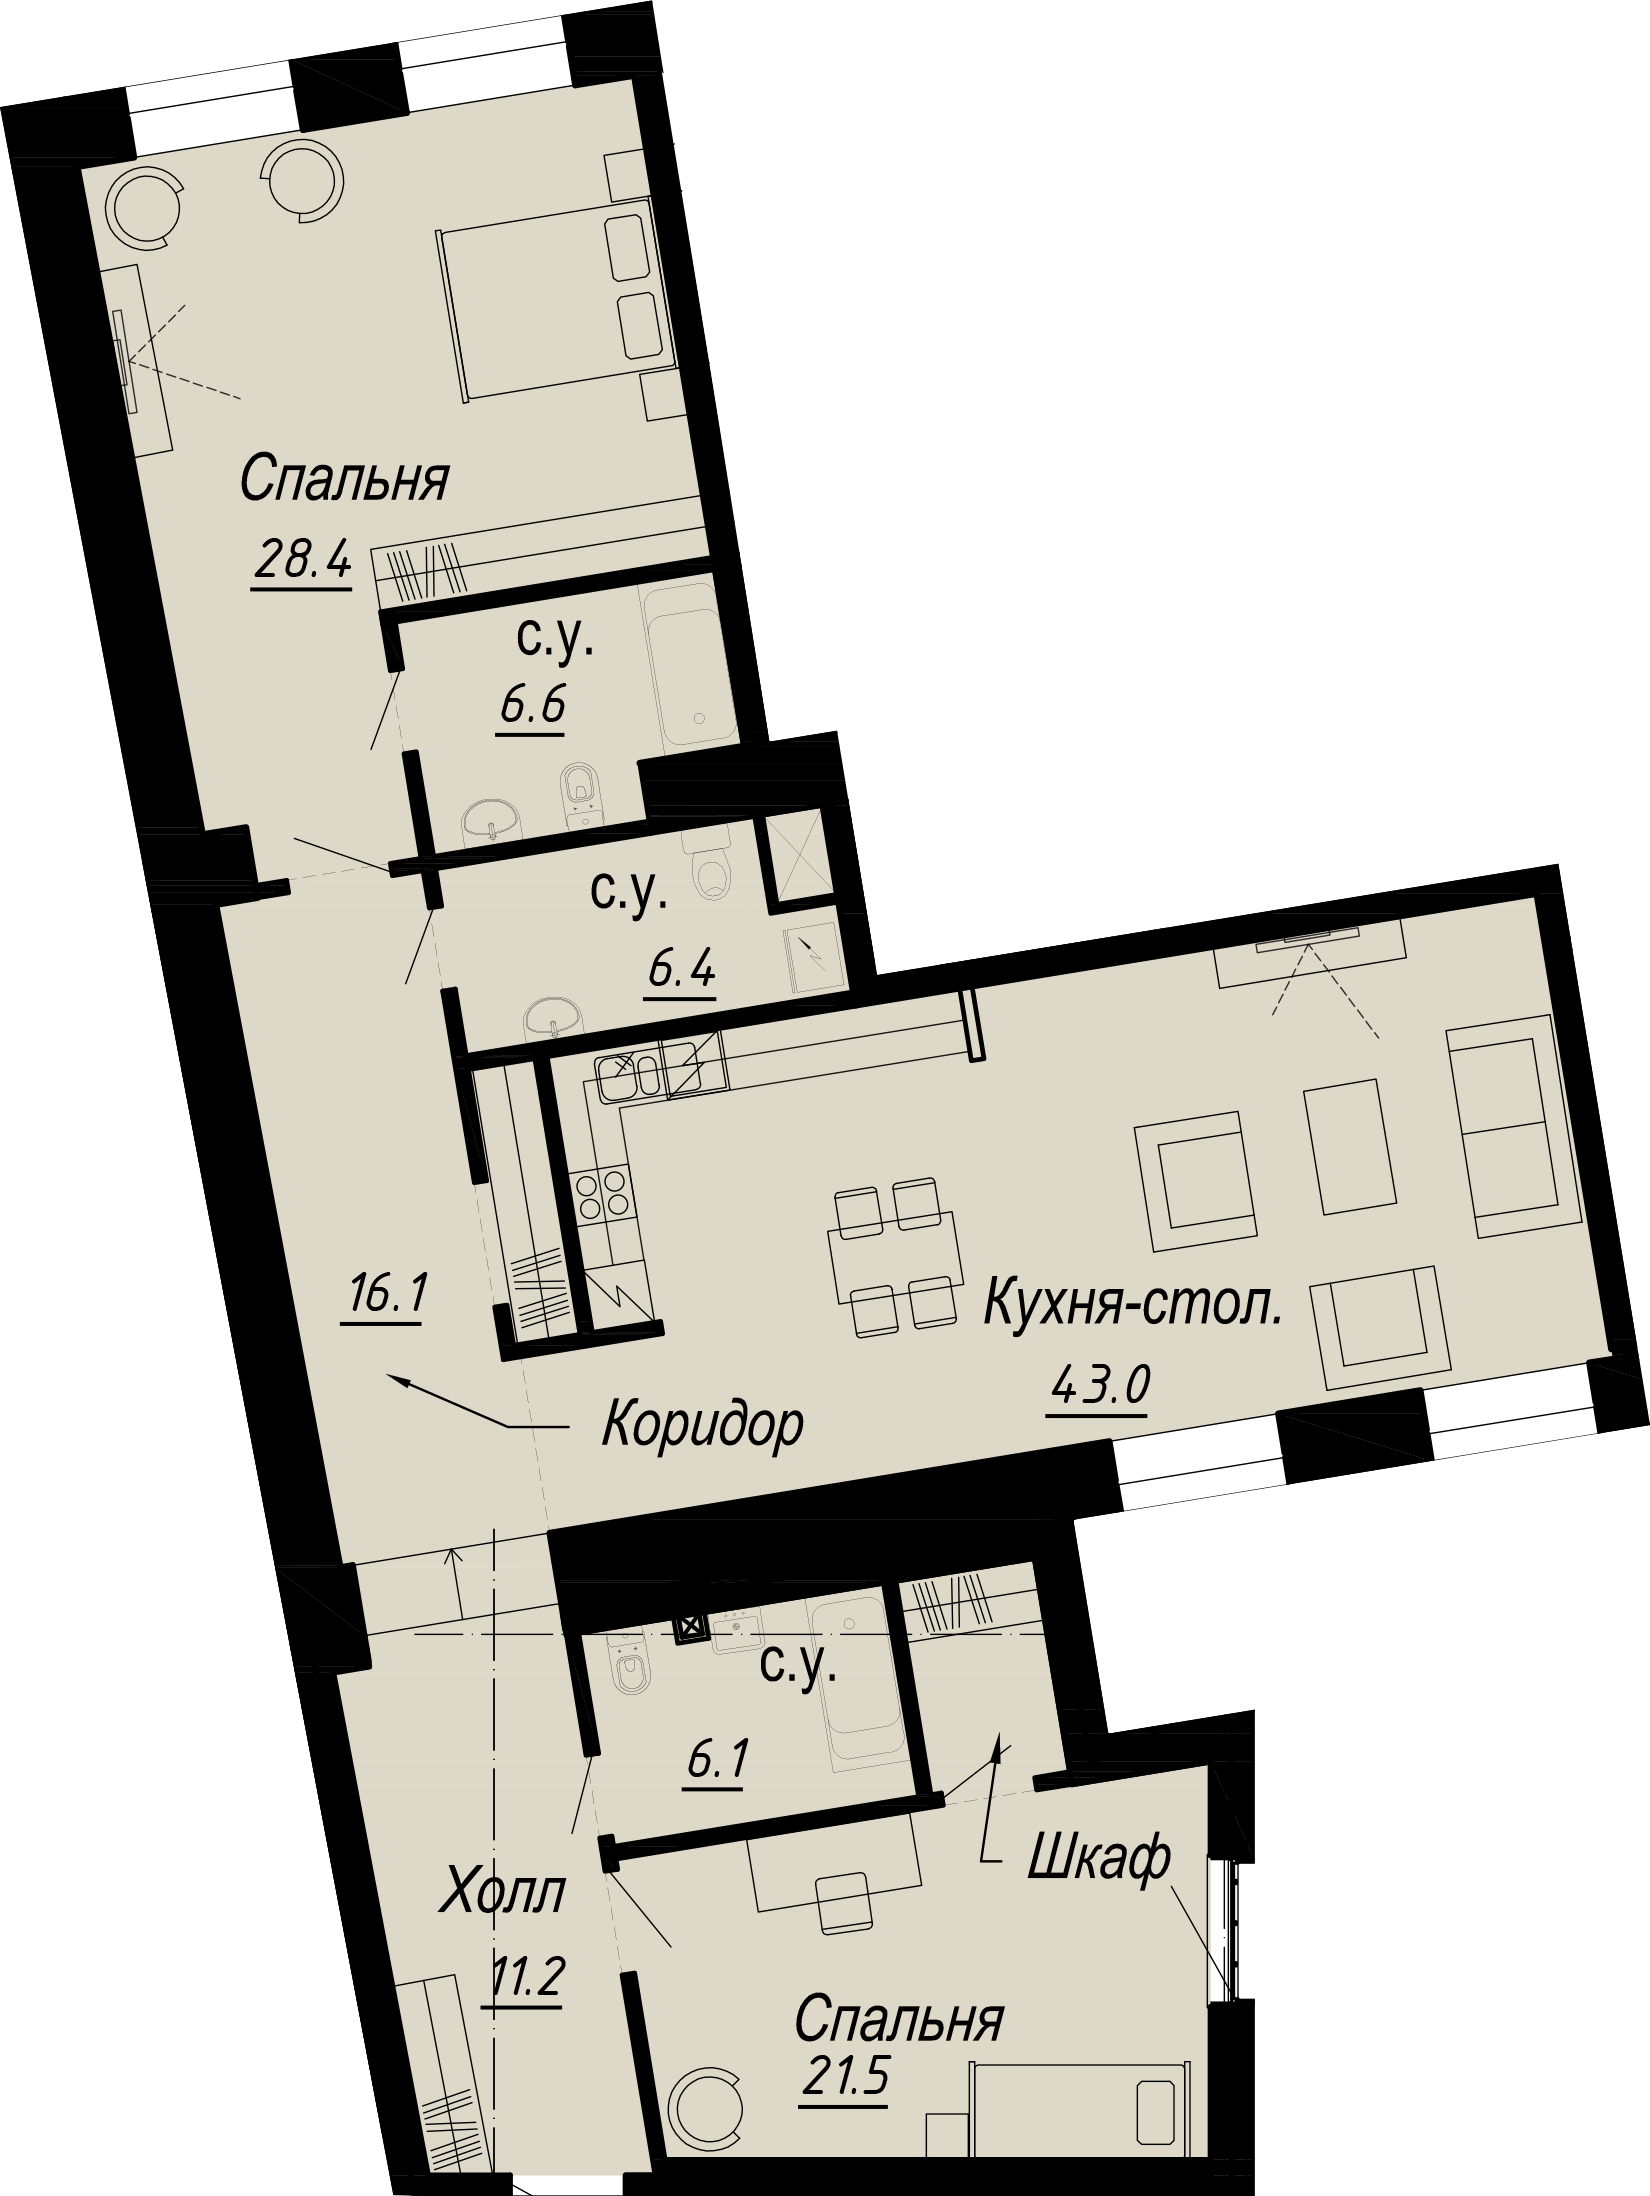 2-комнатная квартира  №15-5 в Meltzer Hall: 141.84 м², этаж 5 - купить в Санкт-Петербурге